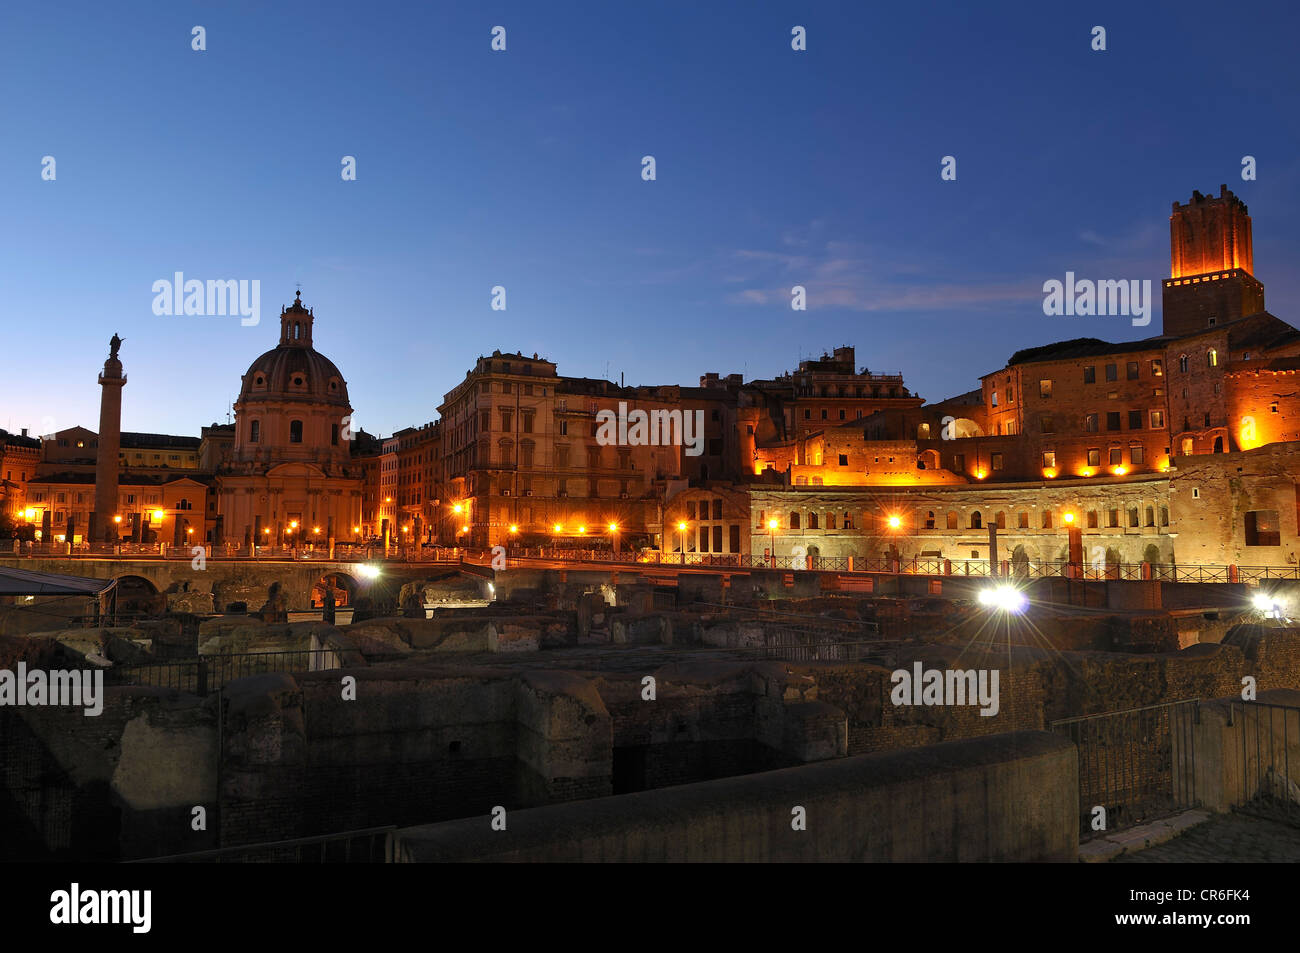 Illuminated Imperial Fora at night, Rome, Lazio region, Italy, Europe Stock Photo